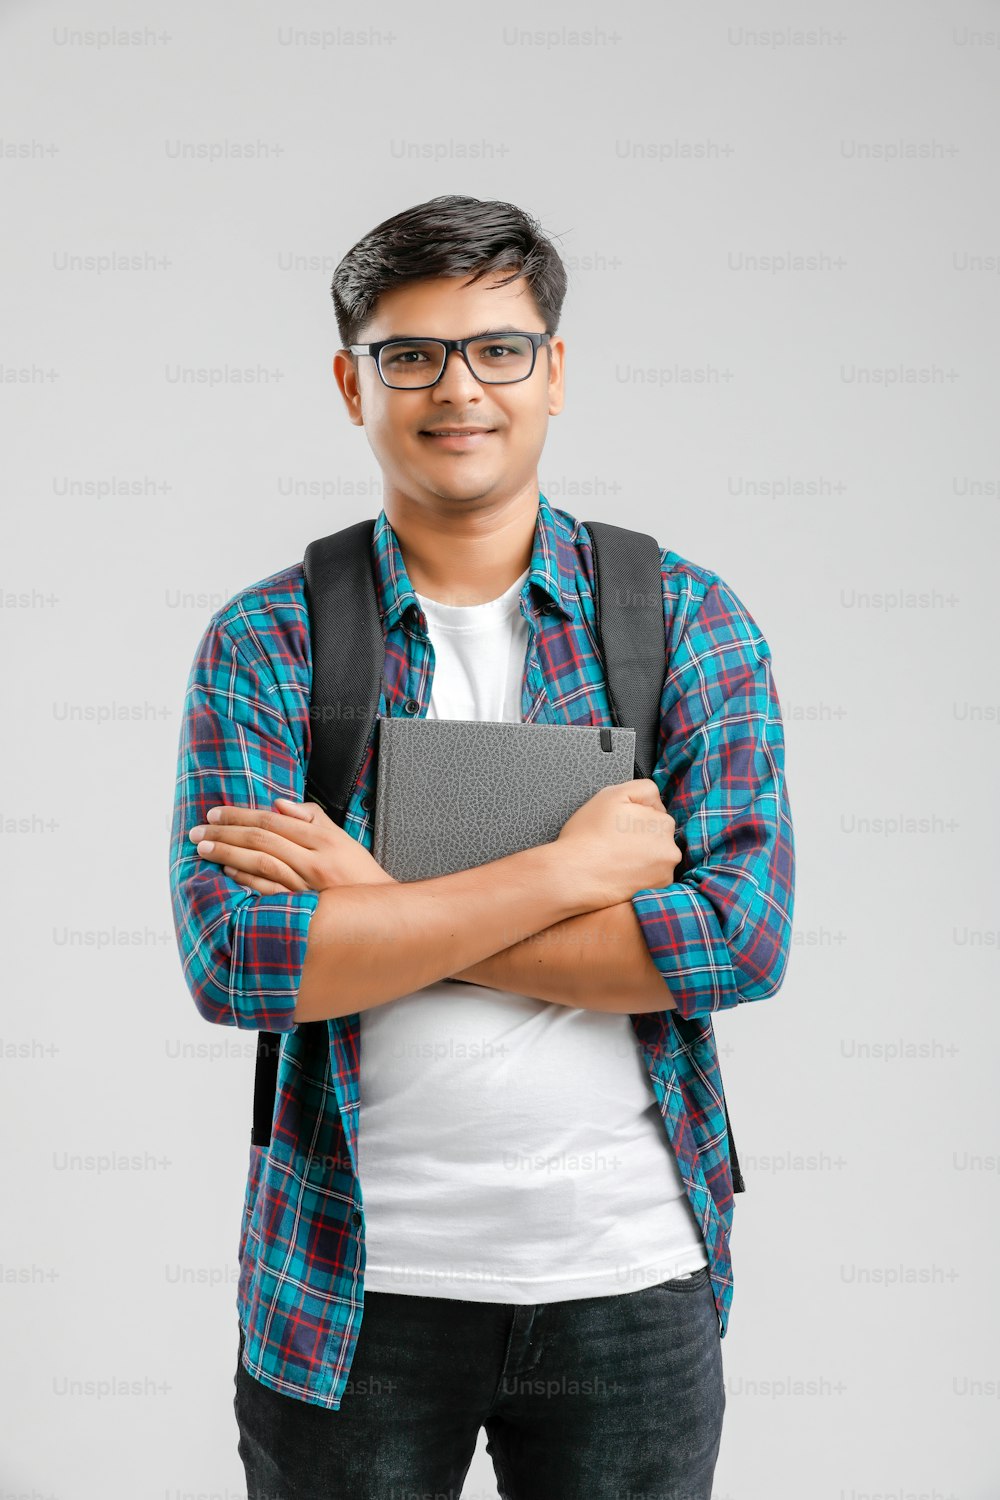 Chico universitario indio con bolsa de espera y libros